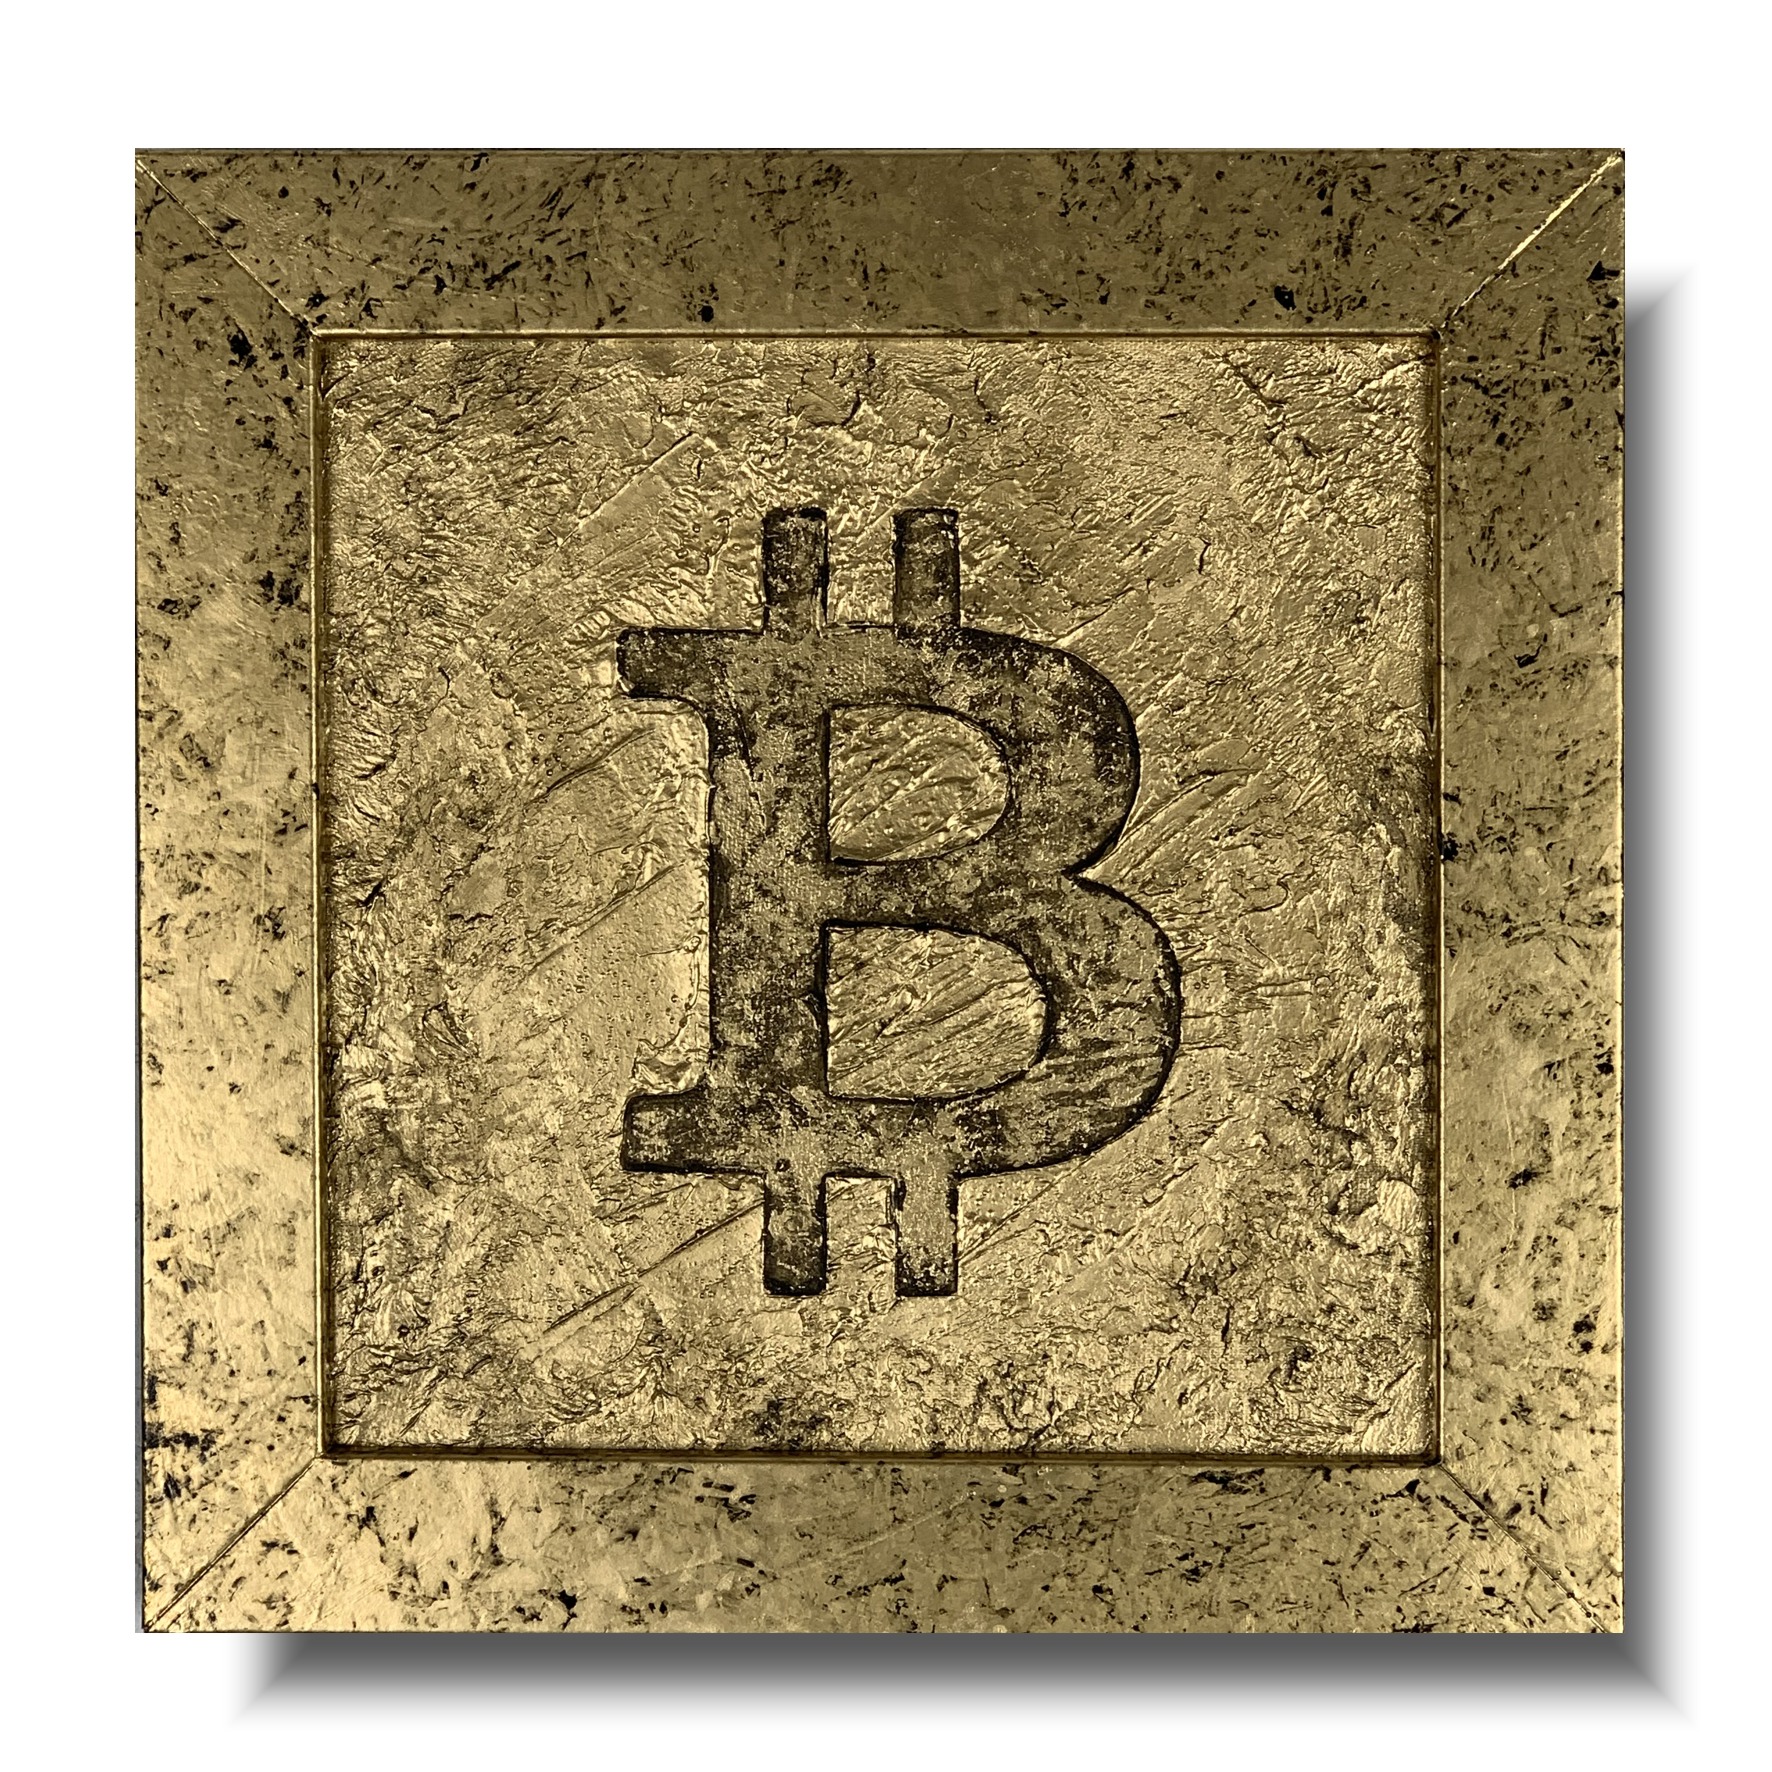 Obraz do biura golden bitcoin, kryptowalyty